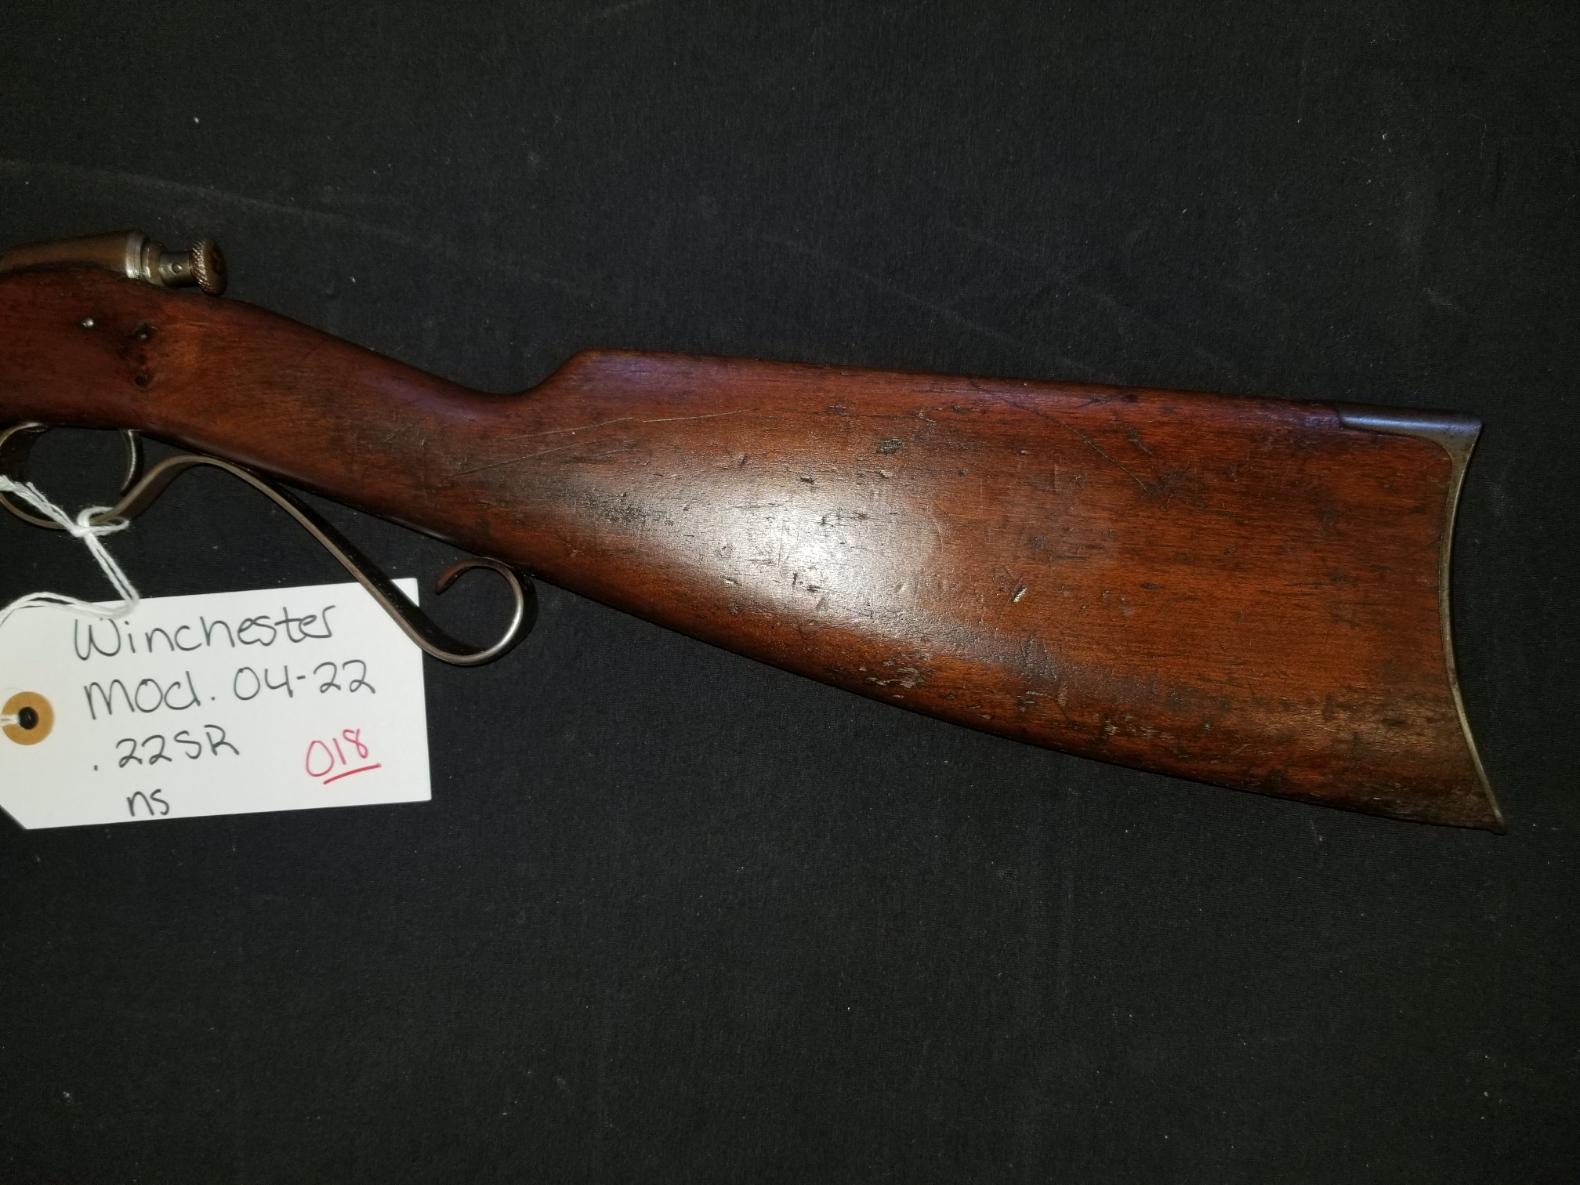 Winchester Mod. 04-22 .22SR